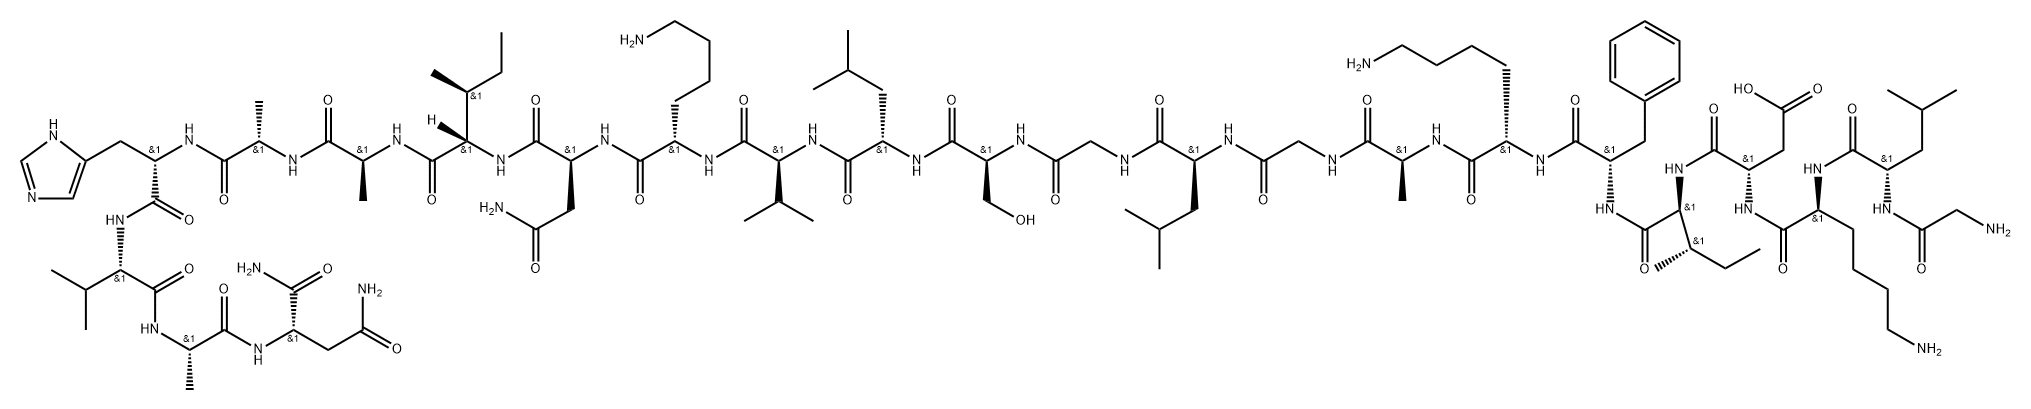 Alyteserin-1d Structure